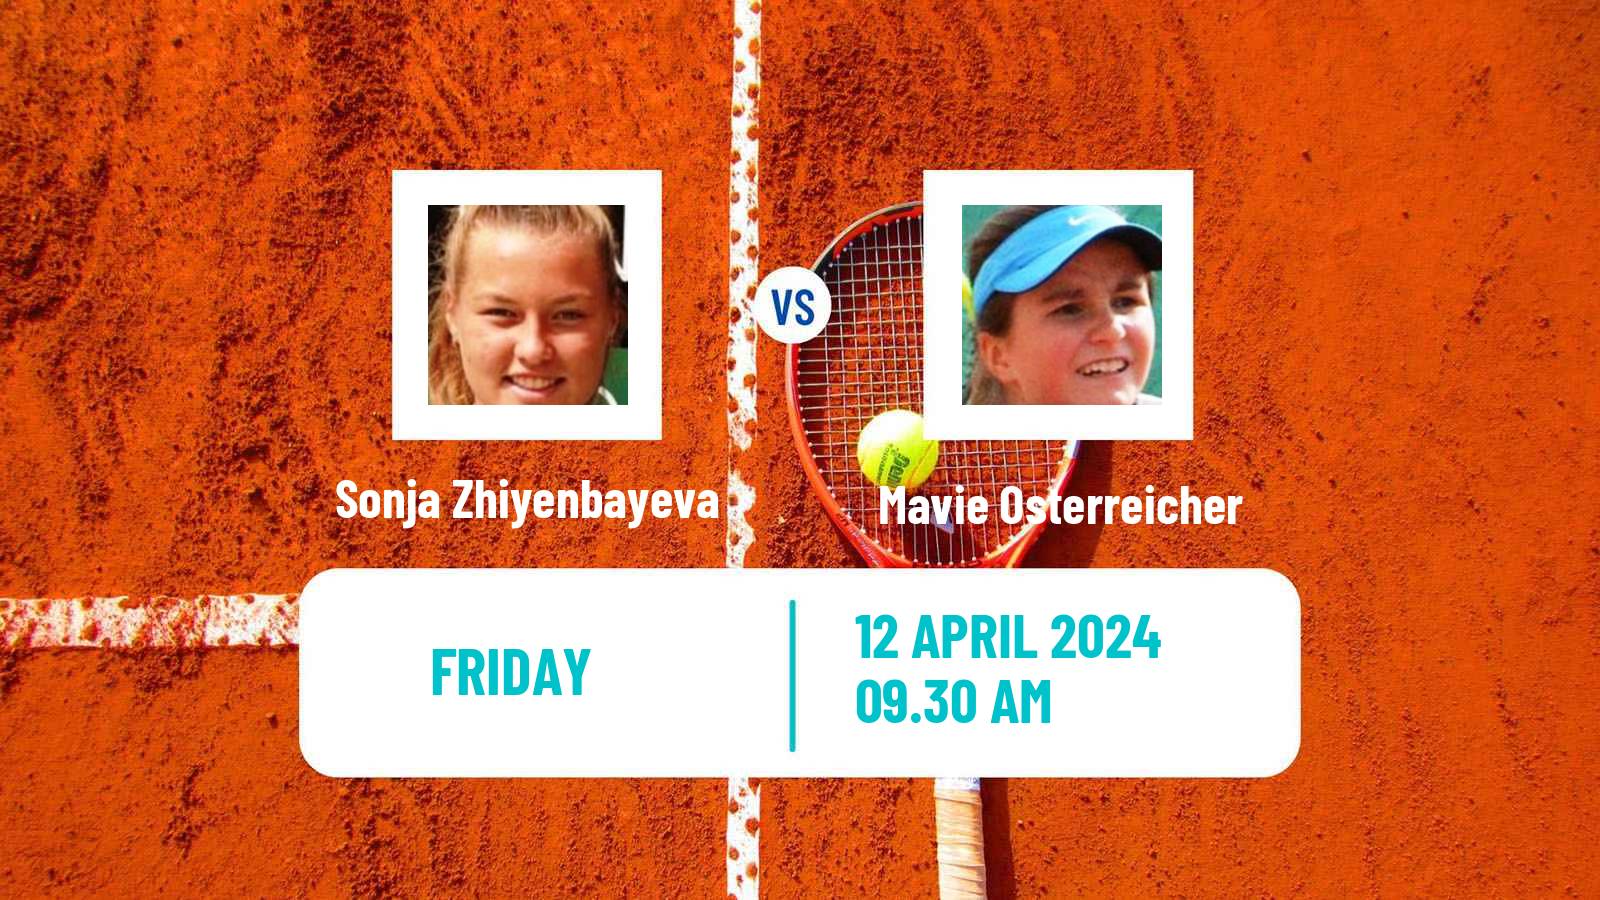 Tennis ITF W15 Antalya 9 Women Sonja Zhiyenbayeva - Mavie Osterreicher